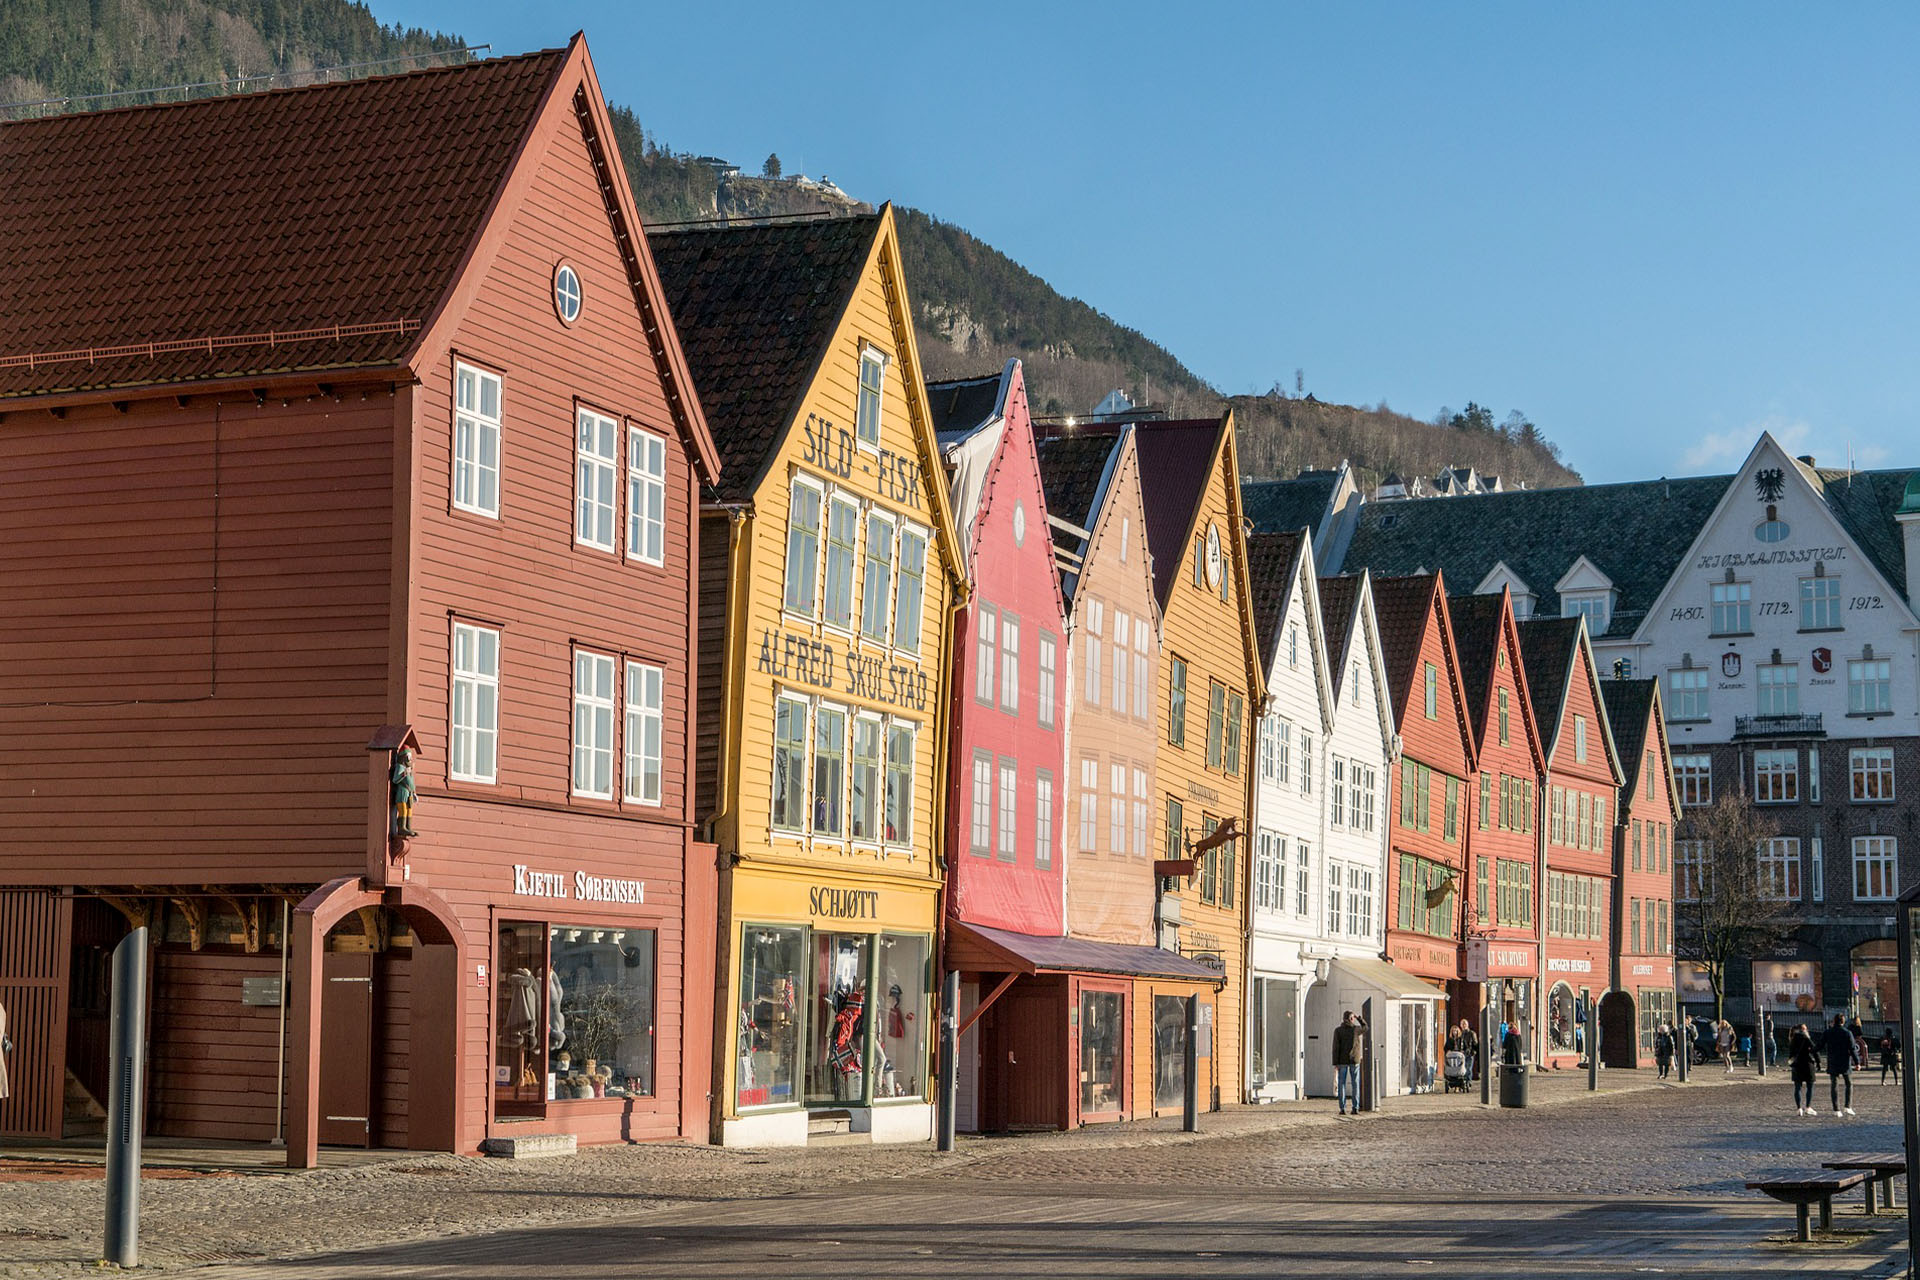 Bergen2